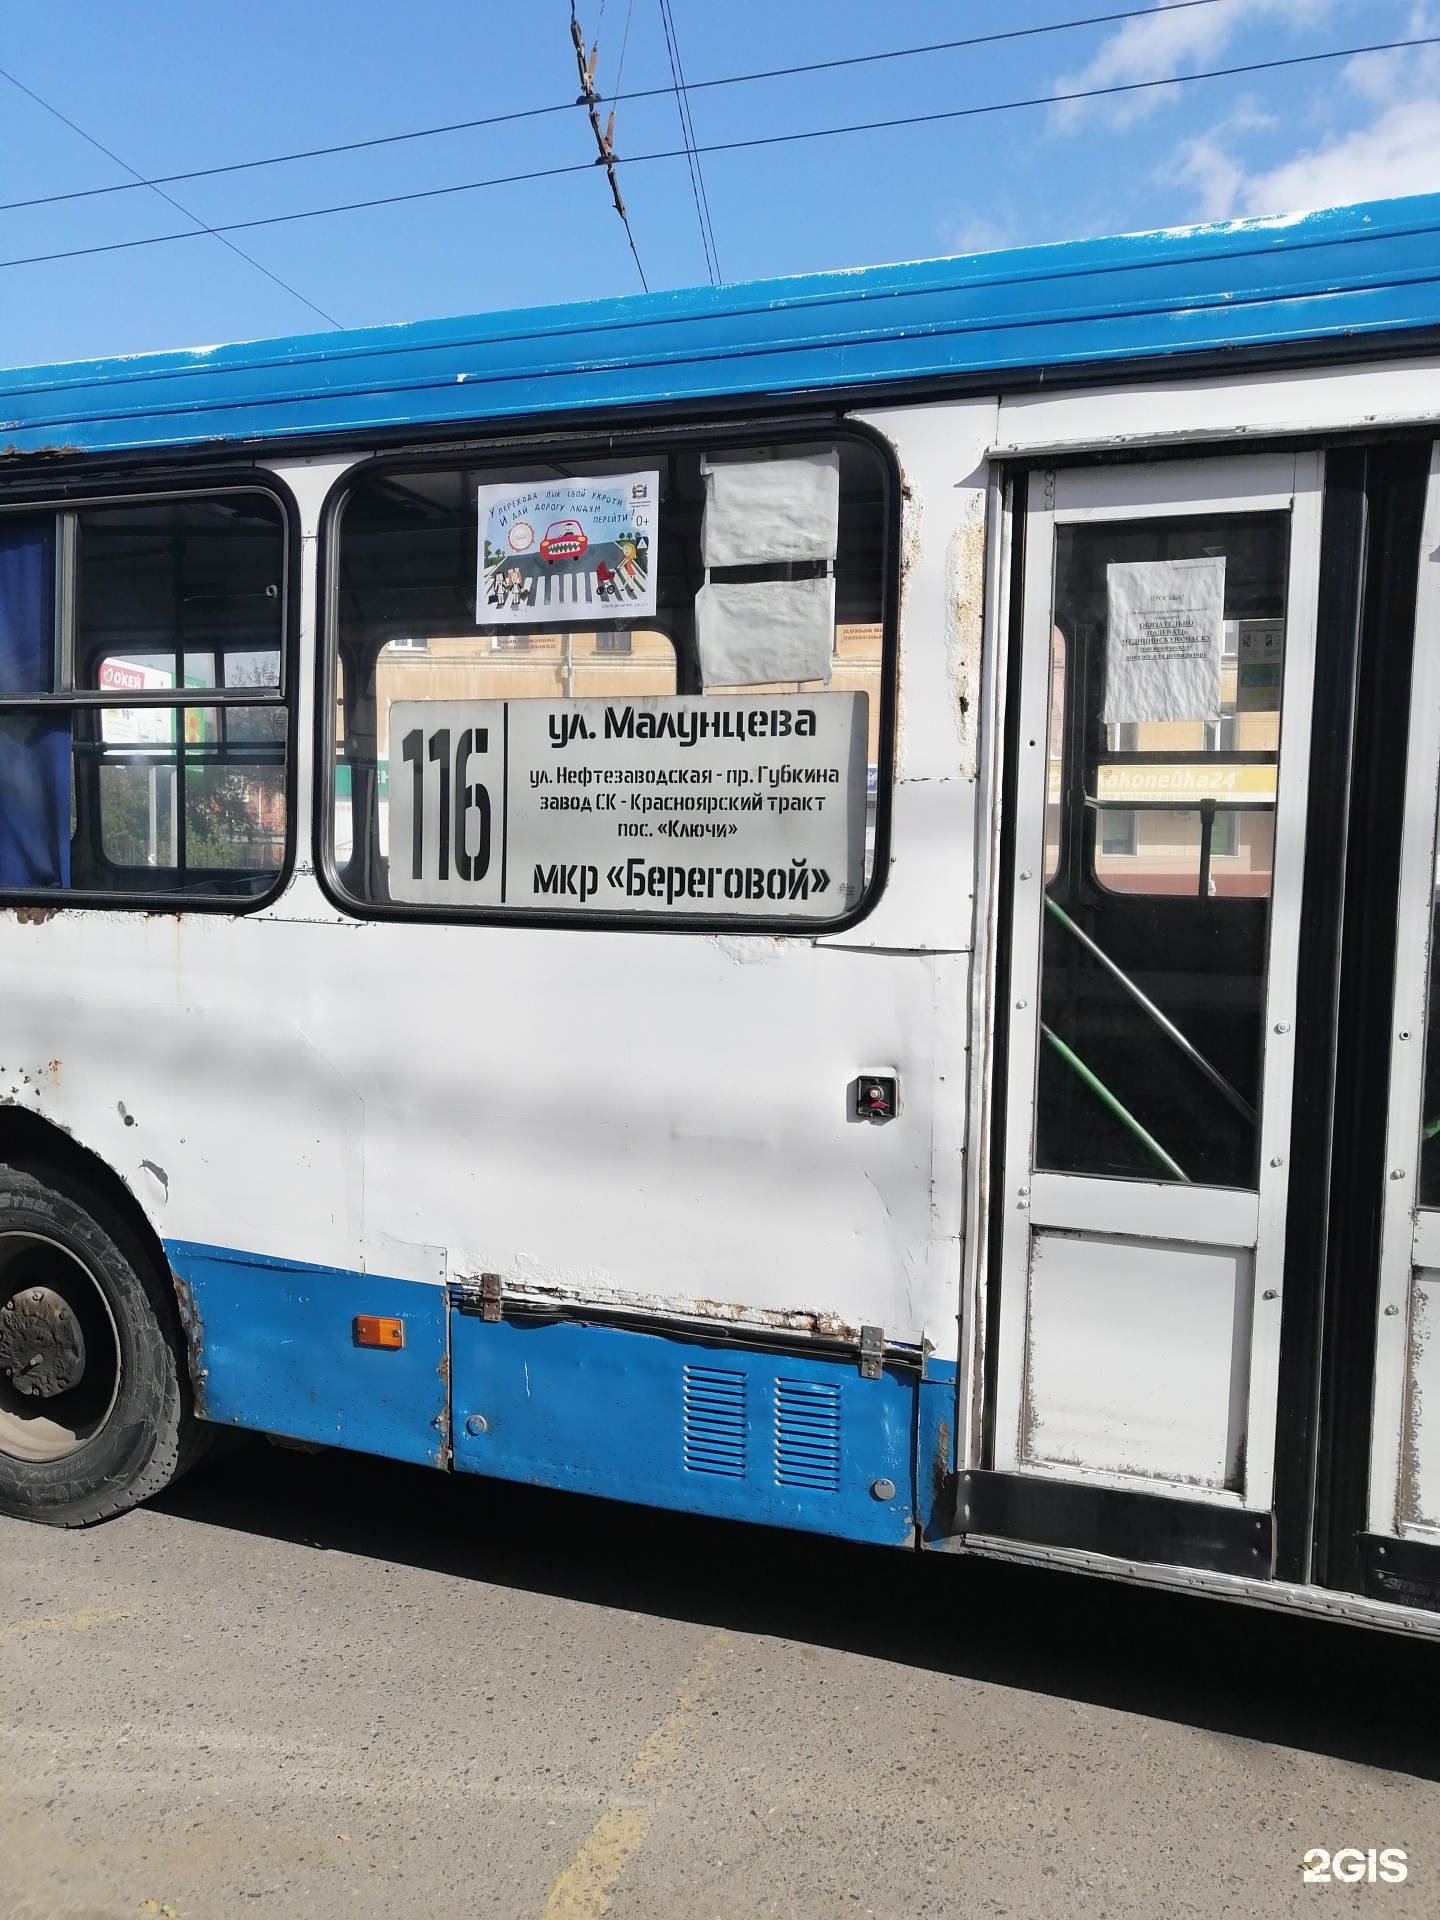 Автобус 116 пермь старые. Автобус 116 Омск. Омск 116 маршрут. Маршрут автобуса а Омске 116. Автобус 116 синий фото.